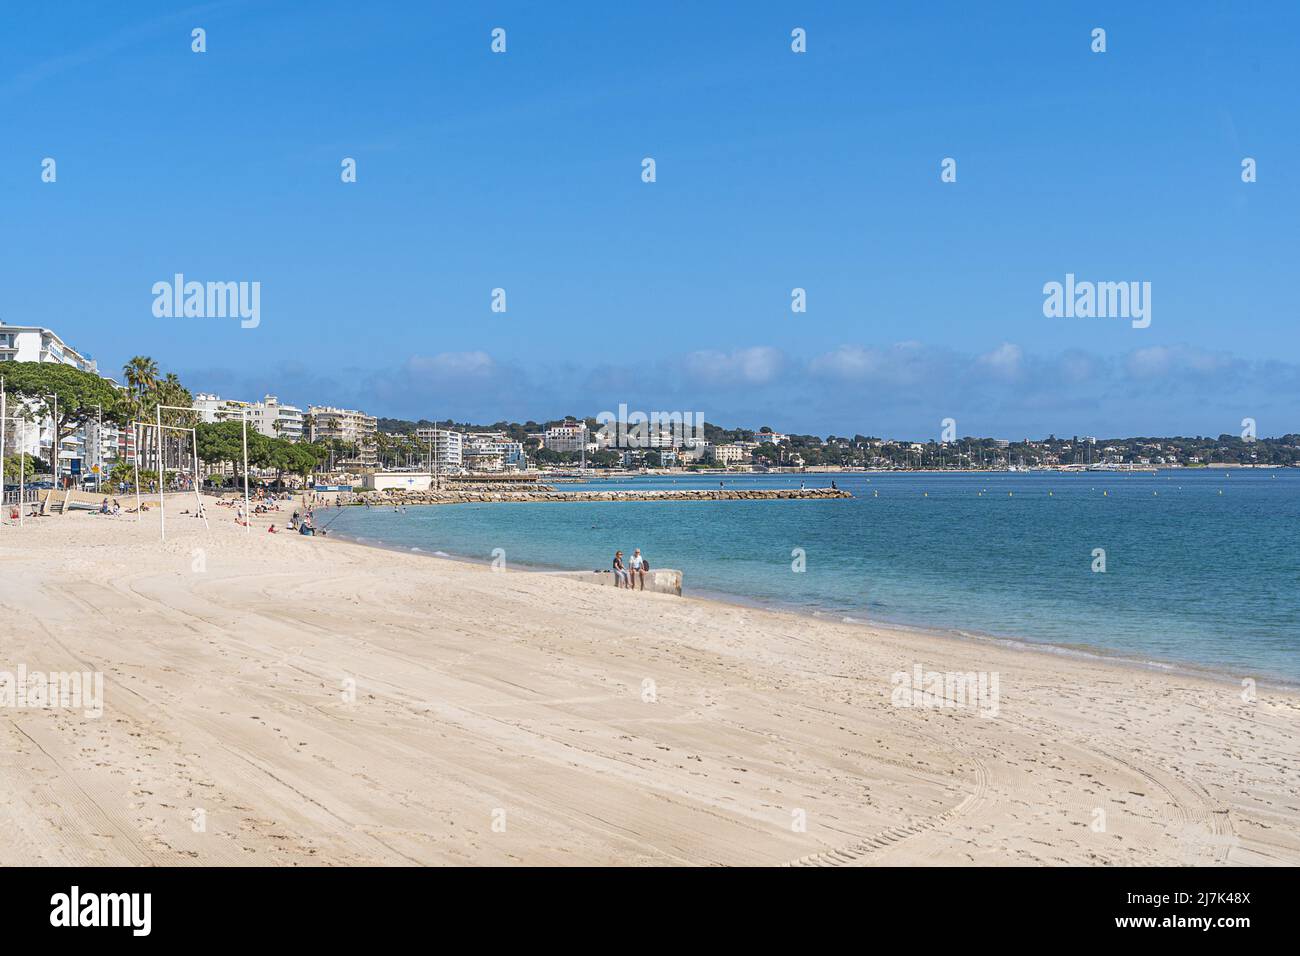 La plage de Juan les pins sur la Côte d'Azur Banque D'Images